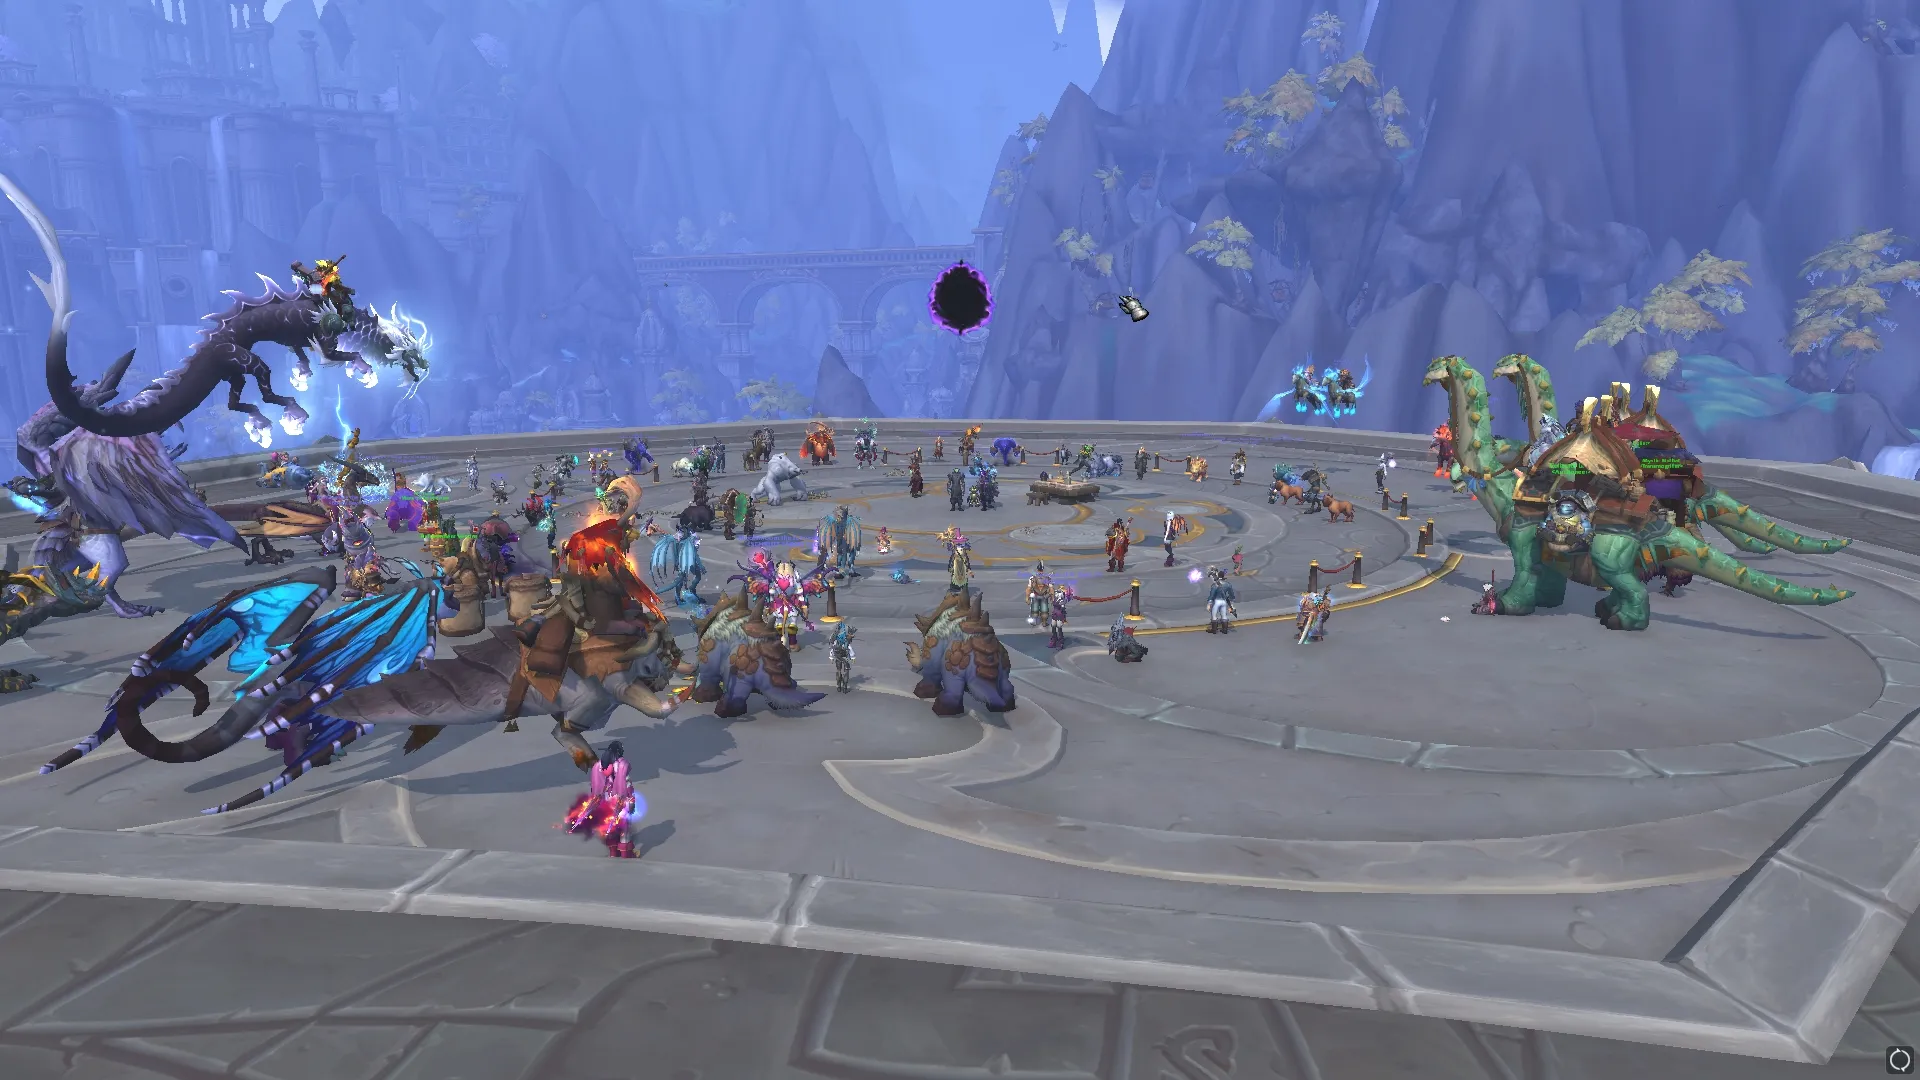 Les joueurs rassemblés autour d'un portail émergeant pour l'événement Hearthstone dans World of Warcraft.